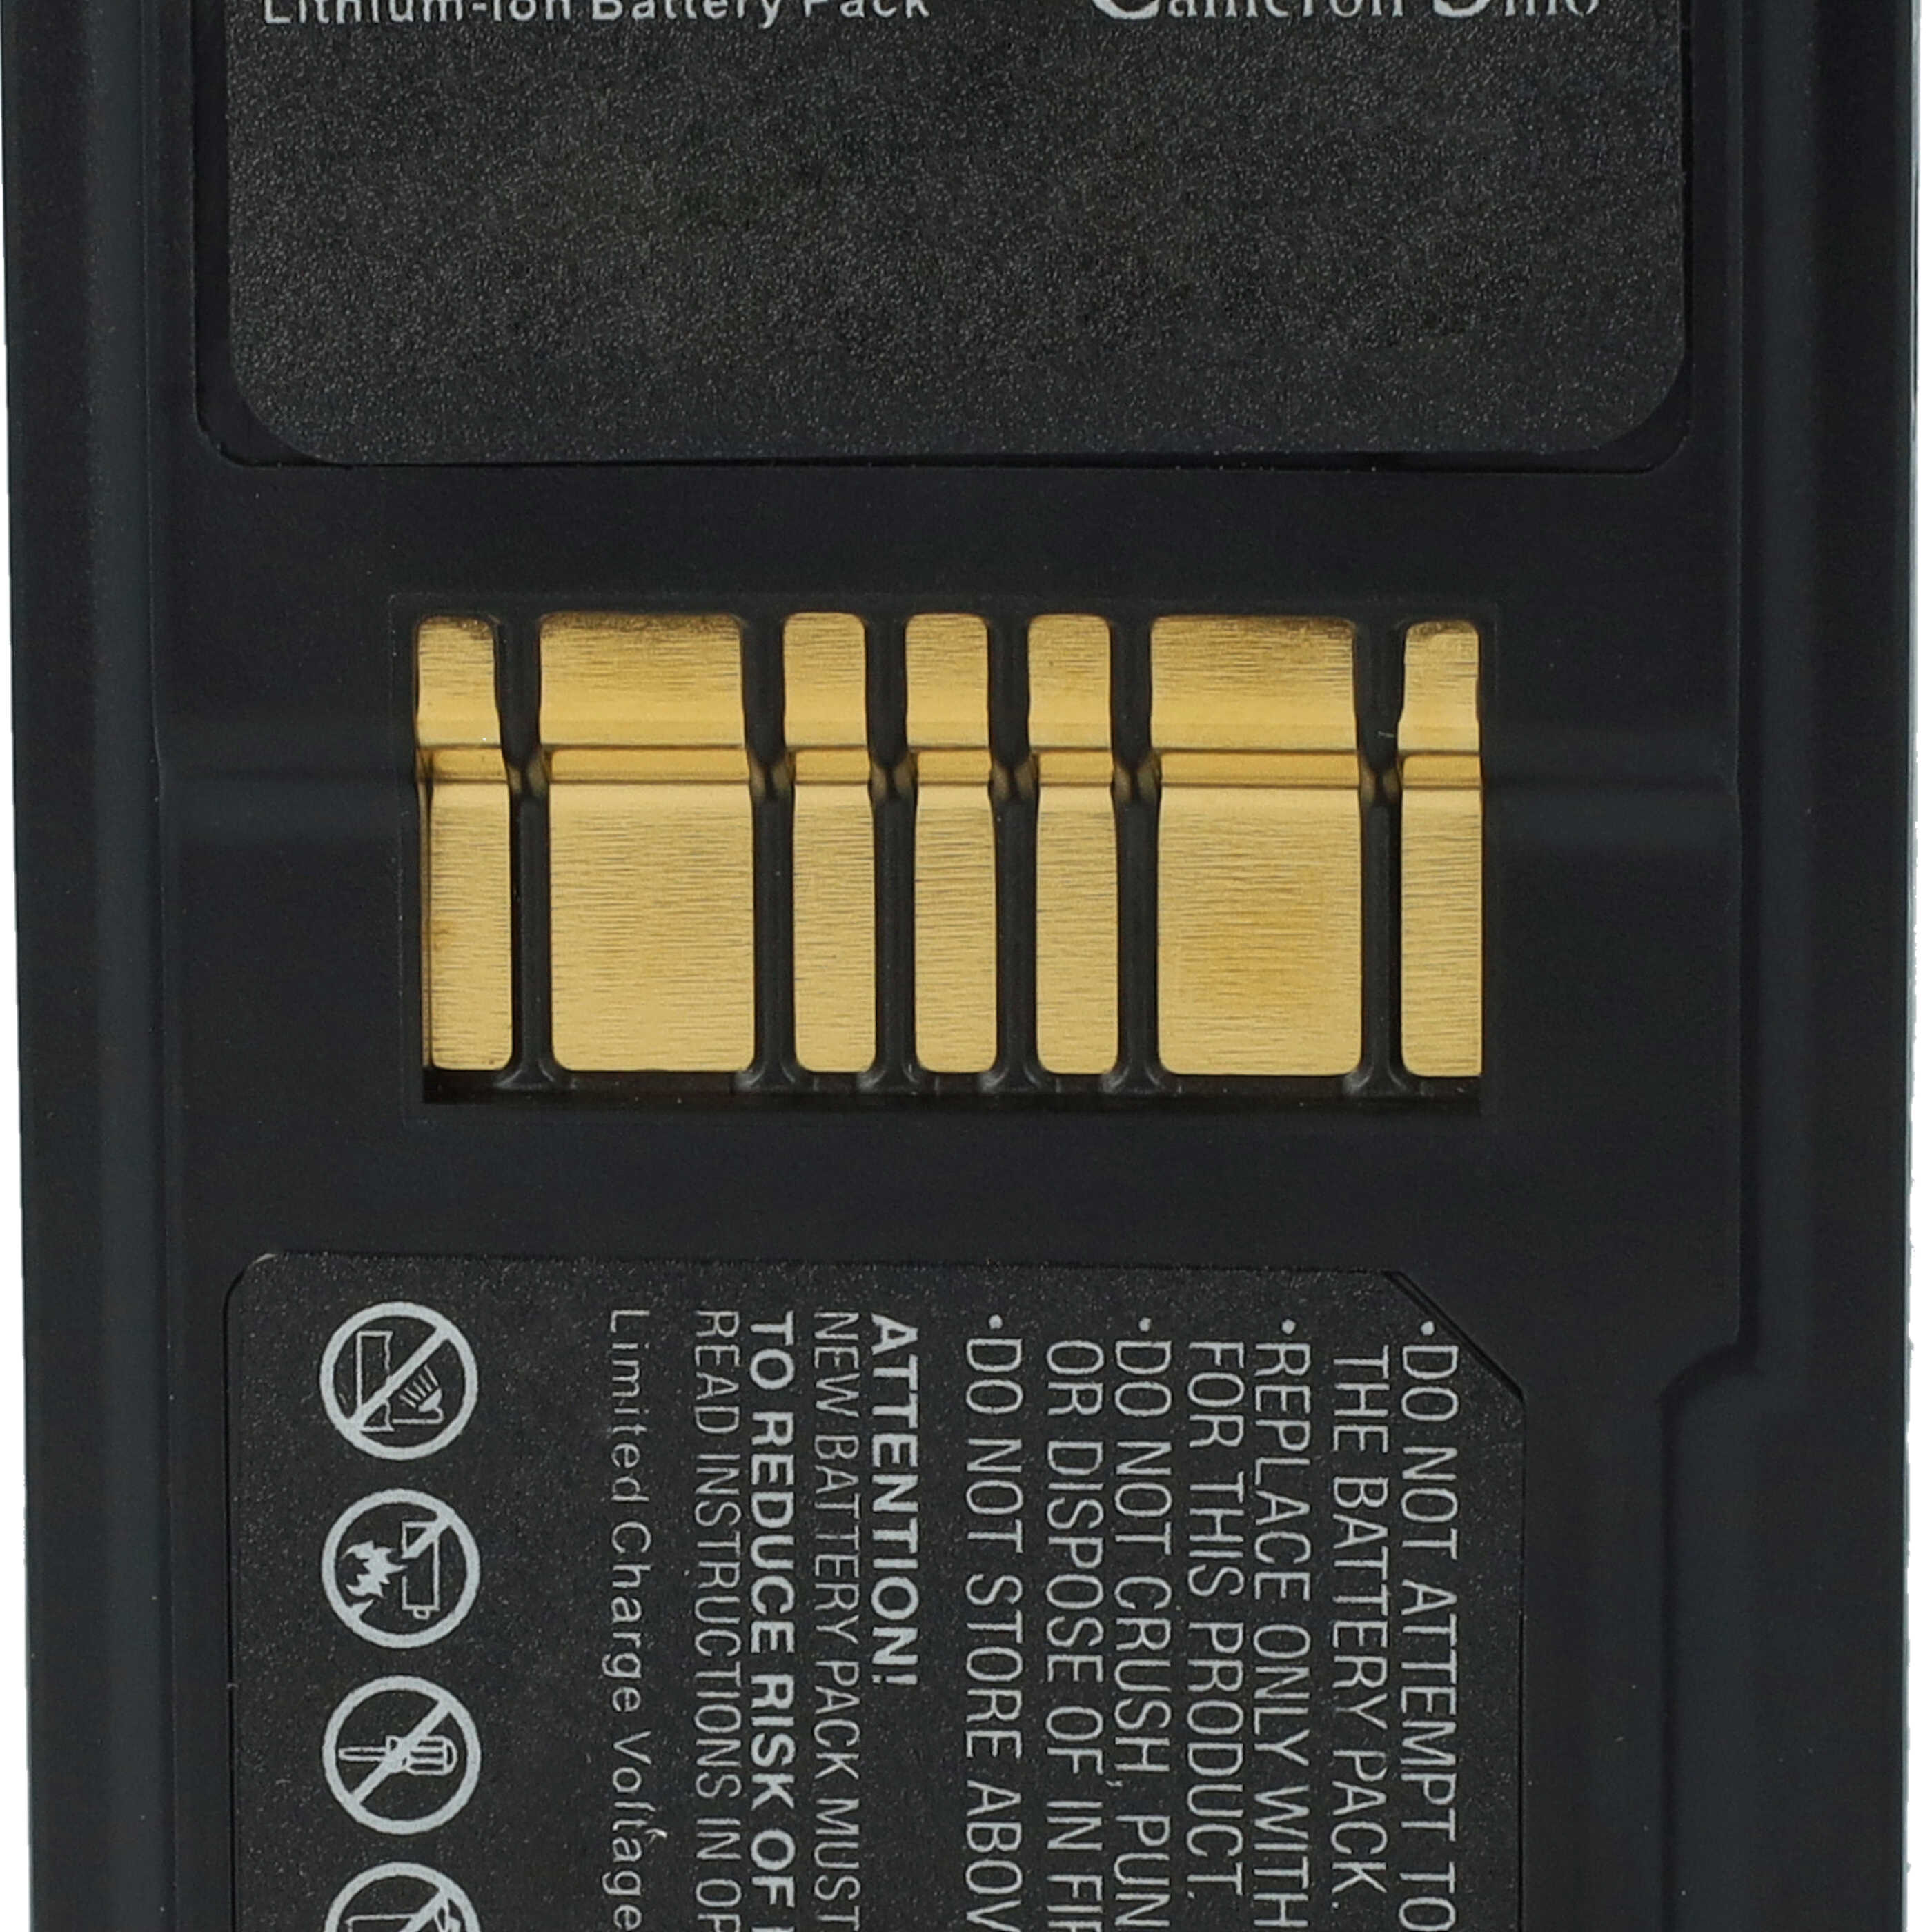 Akumulator do czytnika kodów kreskowych zamiennik Symbol 82-111636-01, BTRY-MC95IABA0 - 6800 mAh 3,7 V Li-Ion